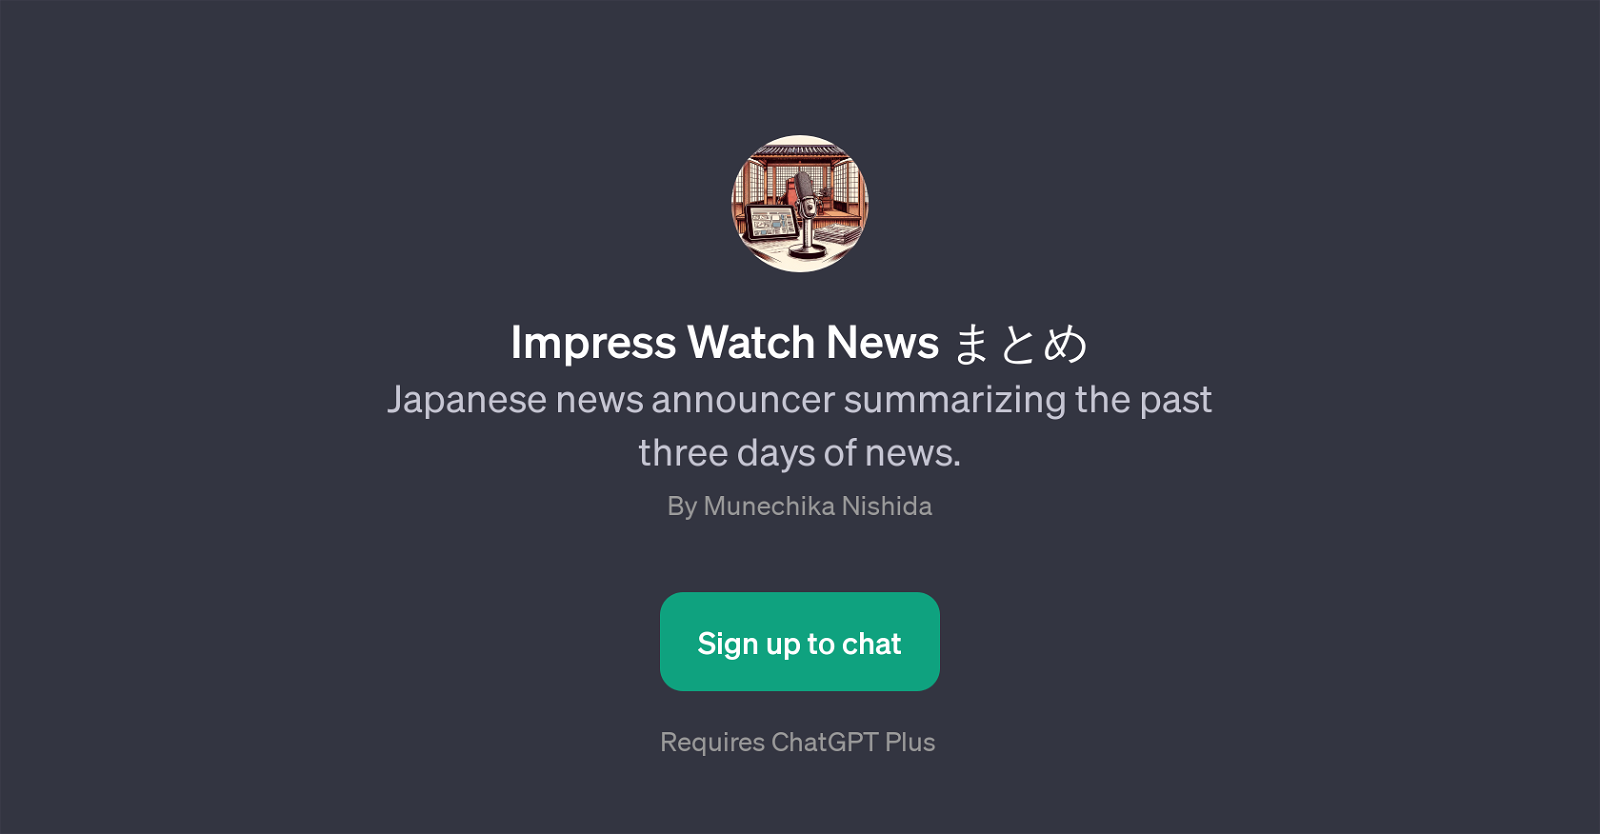 Impress Watch News website